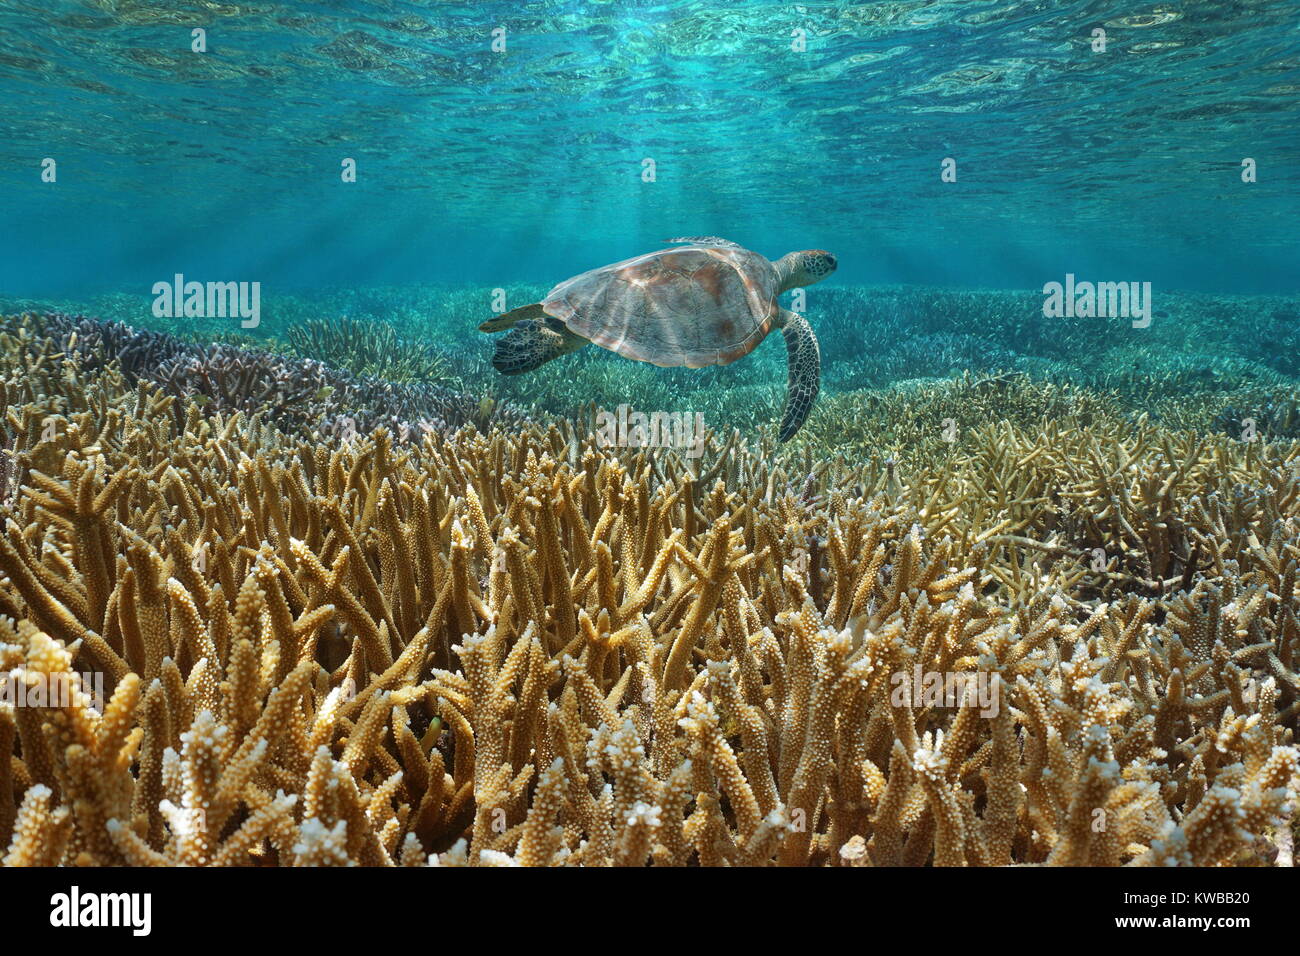 Submarino de arrecifes de coral con una tortuga de mar verde nadando entre la superficie del agua y los corales, Océano Pacífico, Nueva Caledonia, en Oceanía Foto de stock